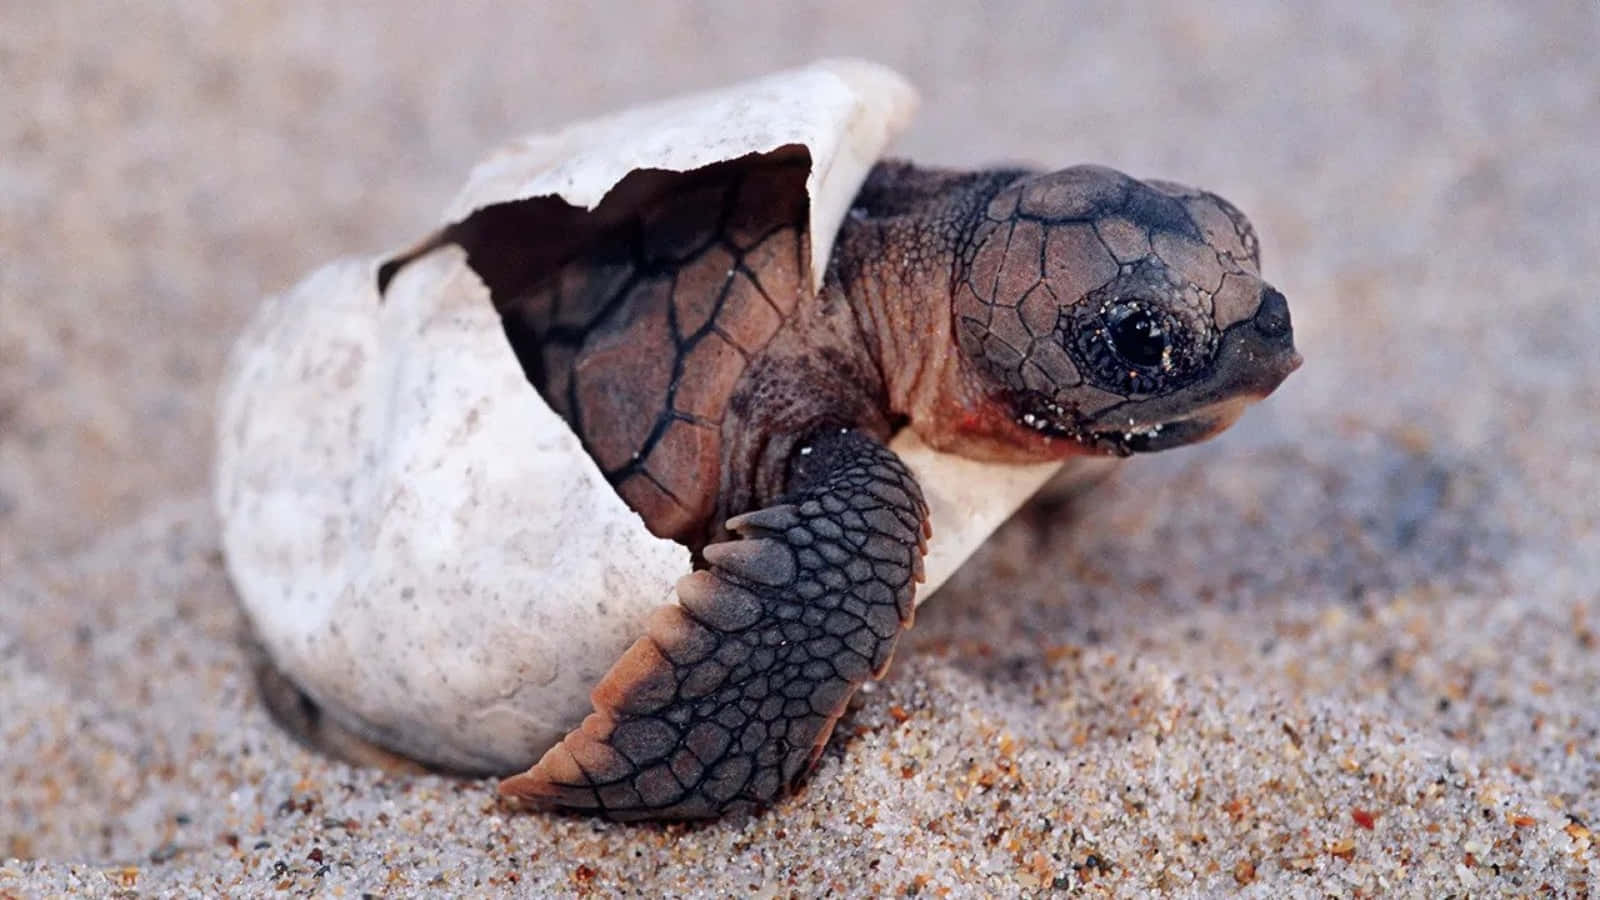 A Uniquely Adorable Cute Turtle